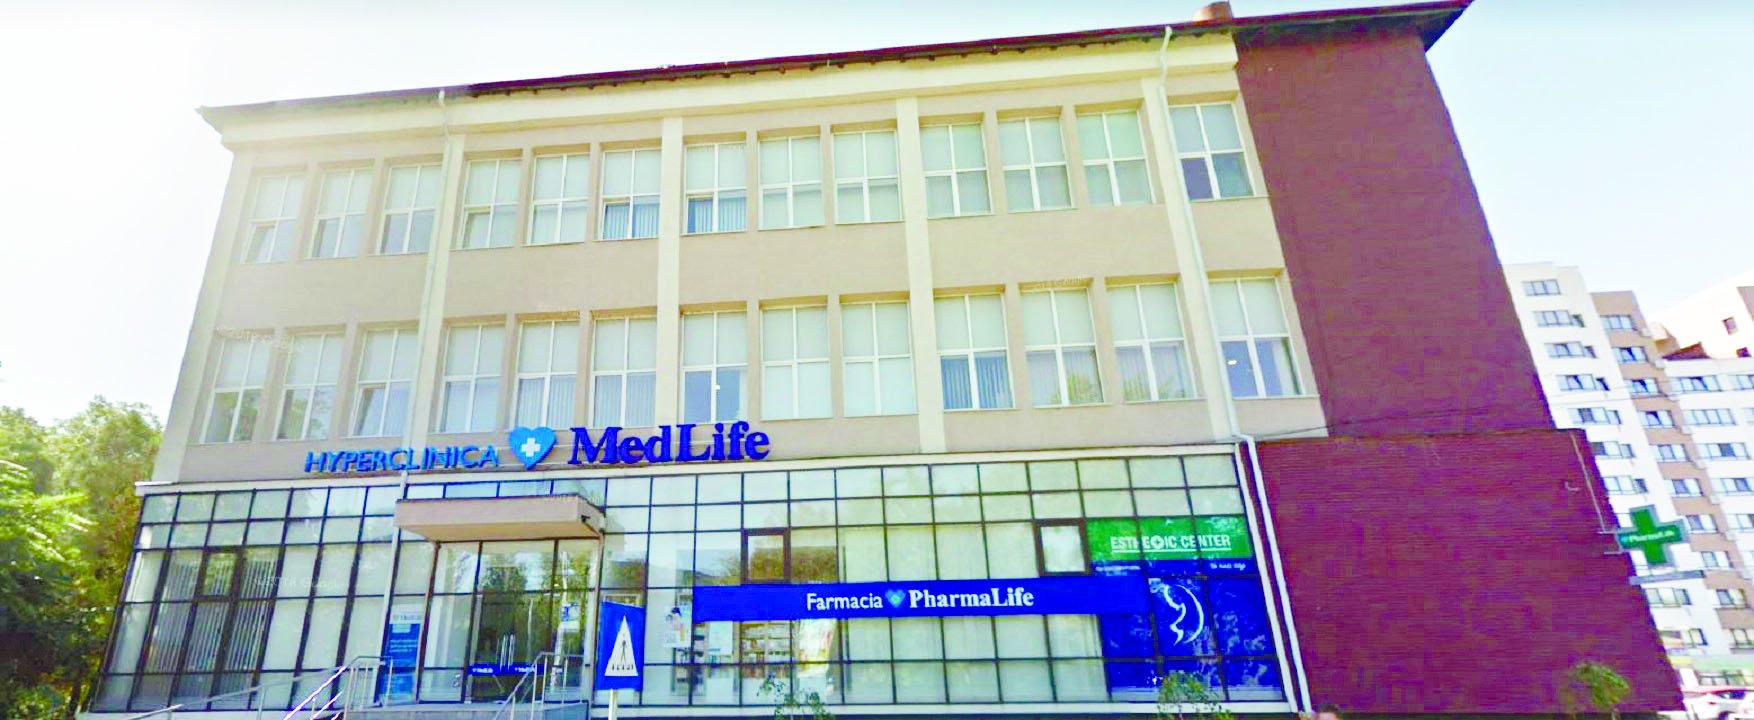  Clădire din Tătăraşi la vânzare cu 1 milion de euro. Telekom şi Medlife, în mijlocul tranzacţiei